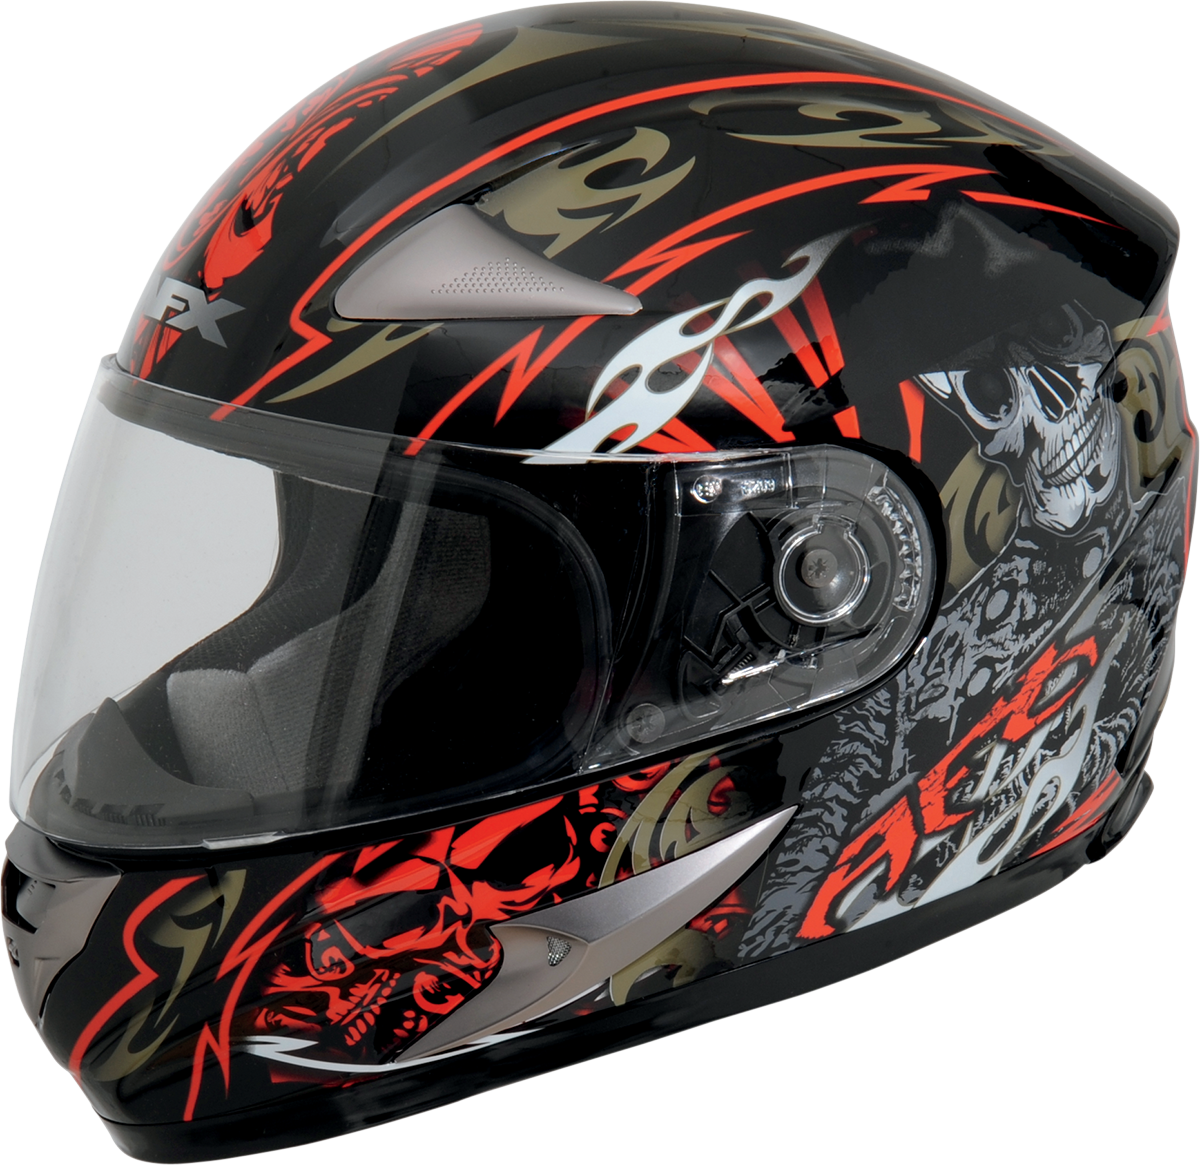 Helmets images free download. Motorcycle helmet png